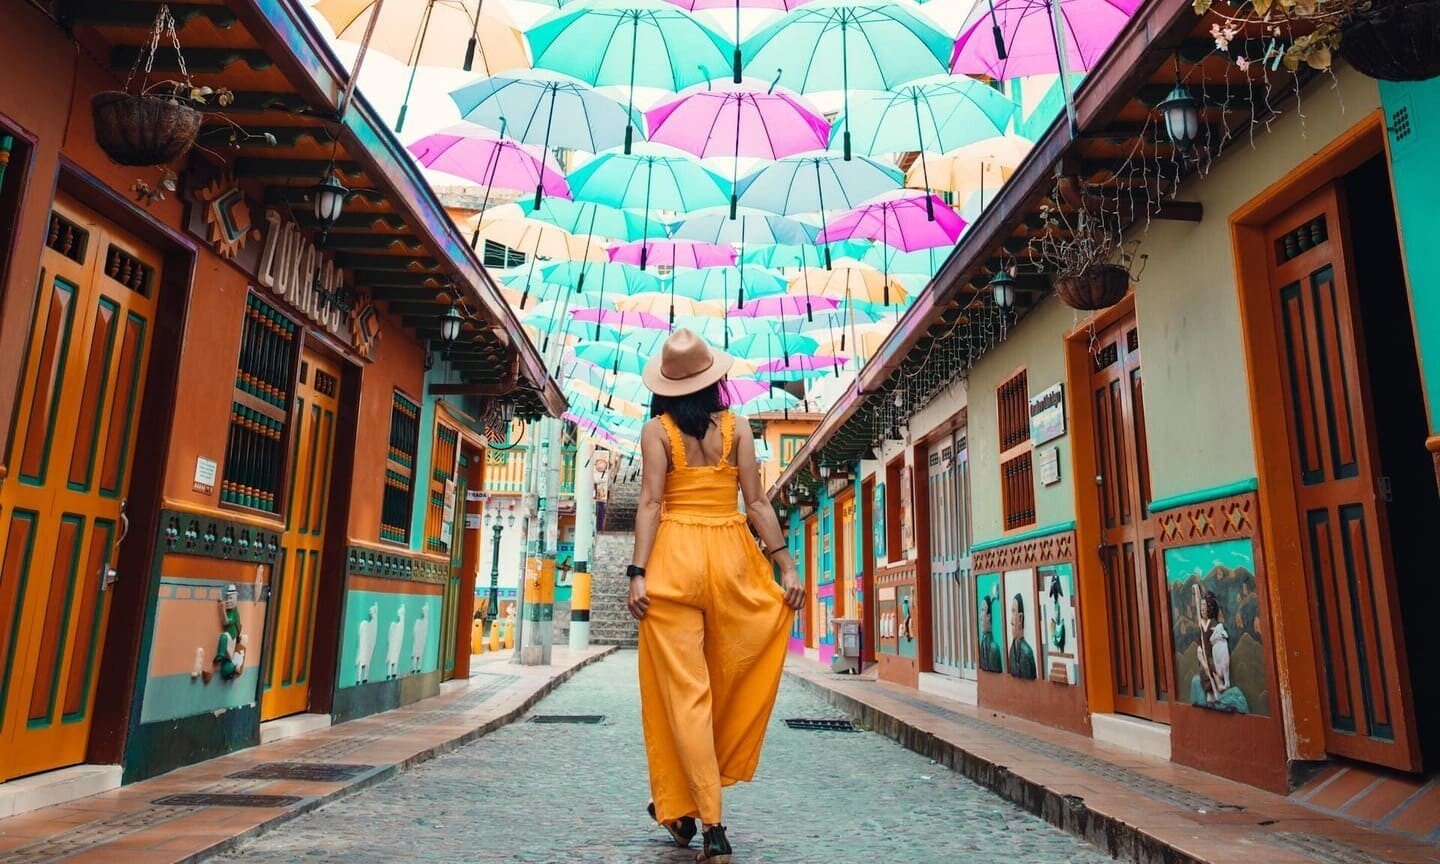 Calle de los paraguas Guatapé, Colombia